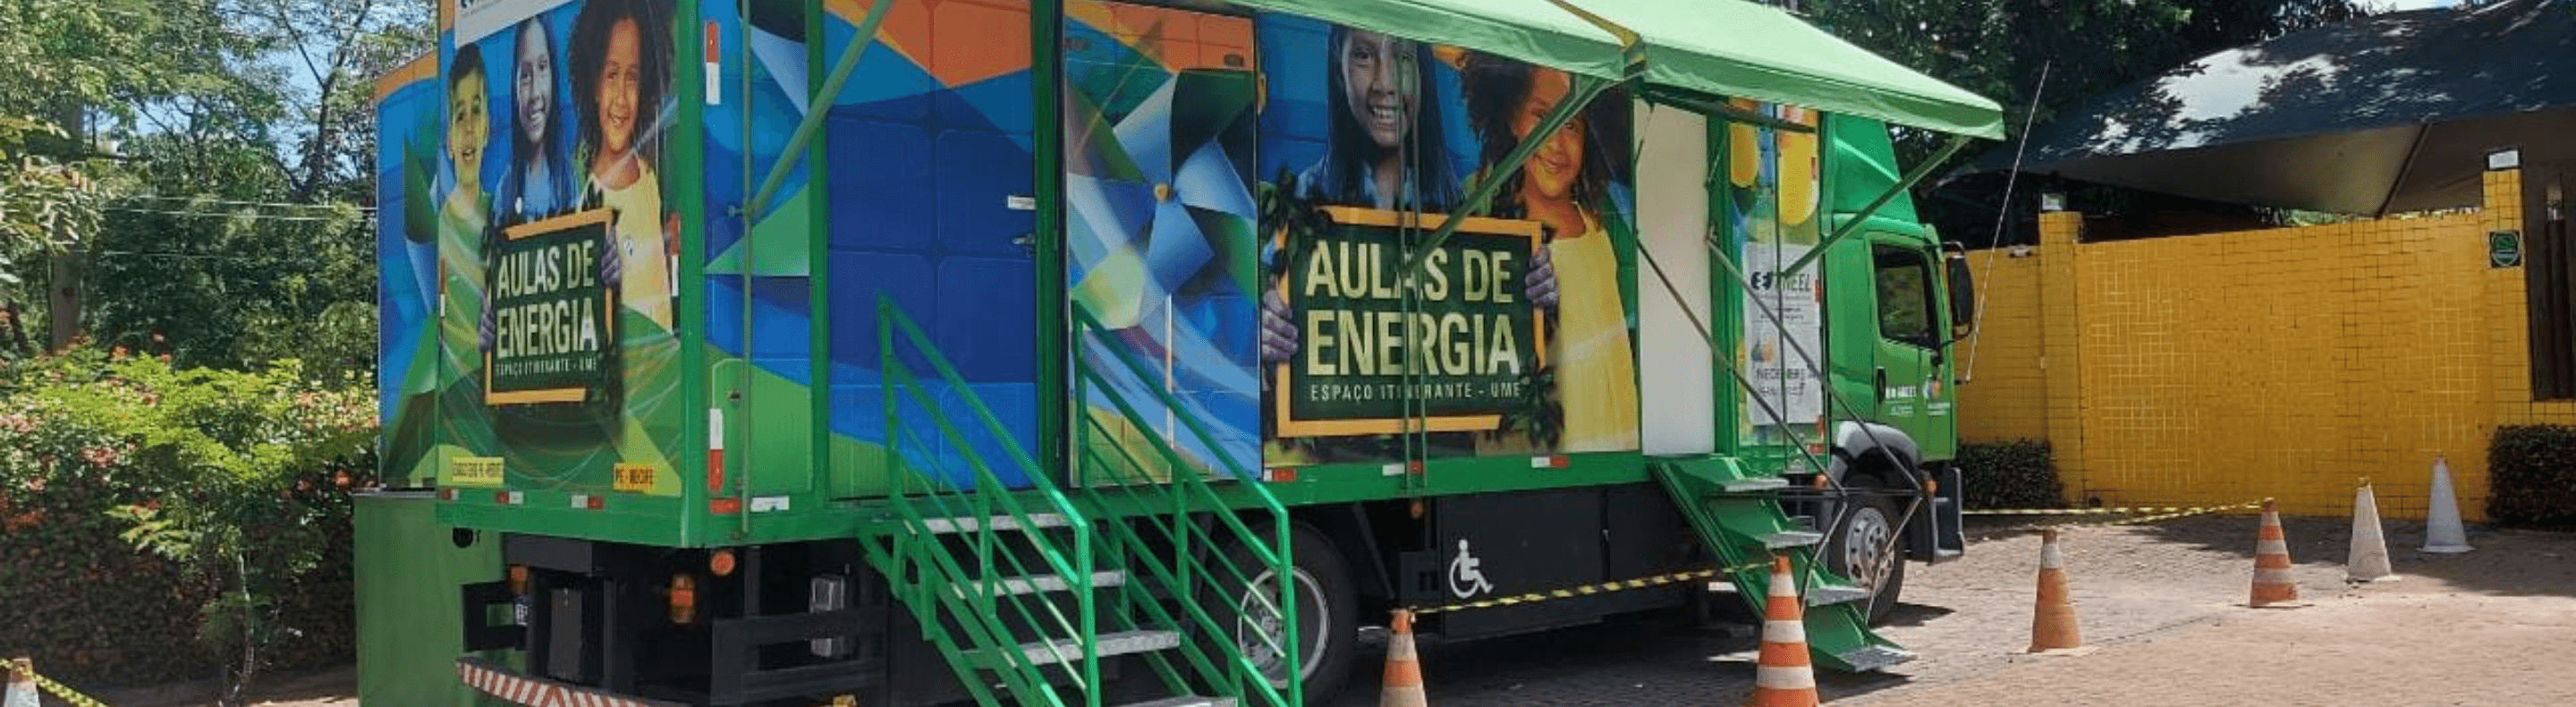 Caminhão do Projeto Aulas de Energia da Neoenergia Pernambuco estacionada na calçada